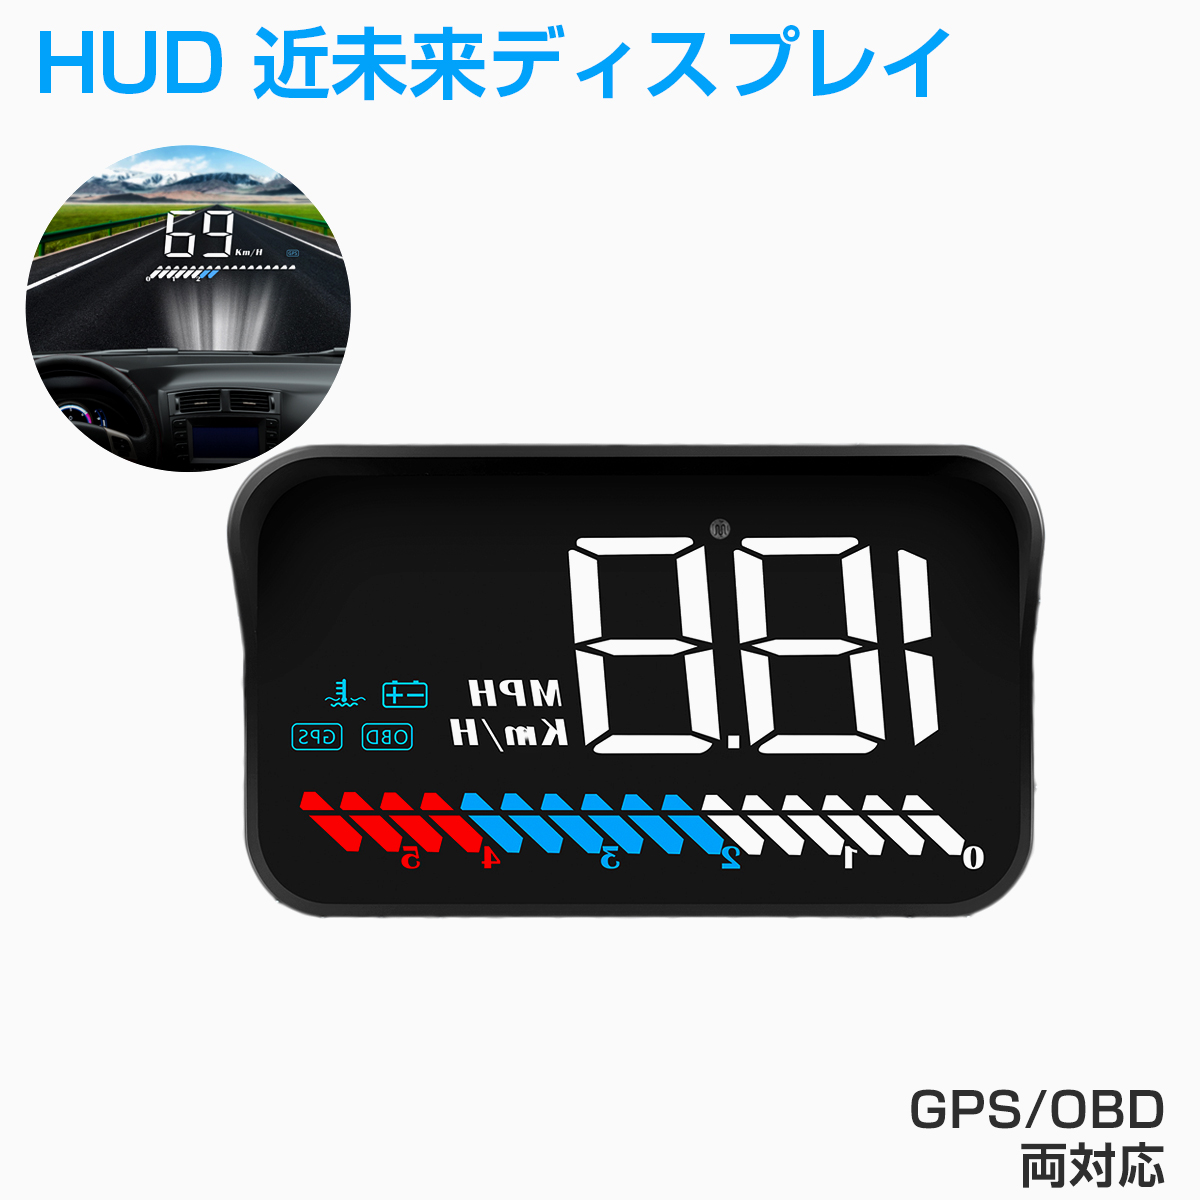 卸売B2B HUD ヘッドアップディスプレイ M7 GPS/OBD2対応 大画面 カラフル 日本語説明書 車載スピードメーター ハイブリッド車対応 フロントガラス 速度 回転数 水温 警告機能 宅配便送料無料 6ヶ月保証 K&M